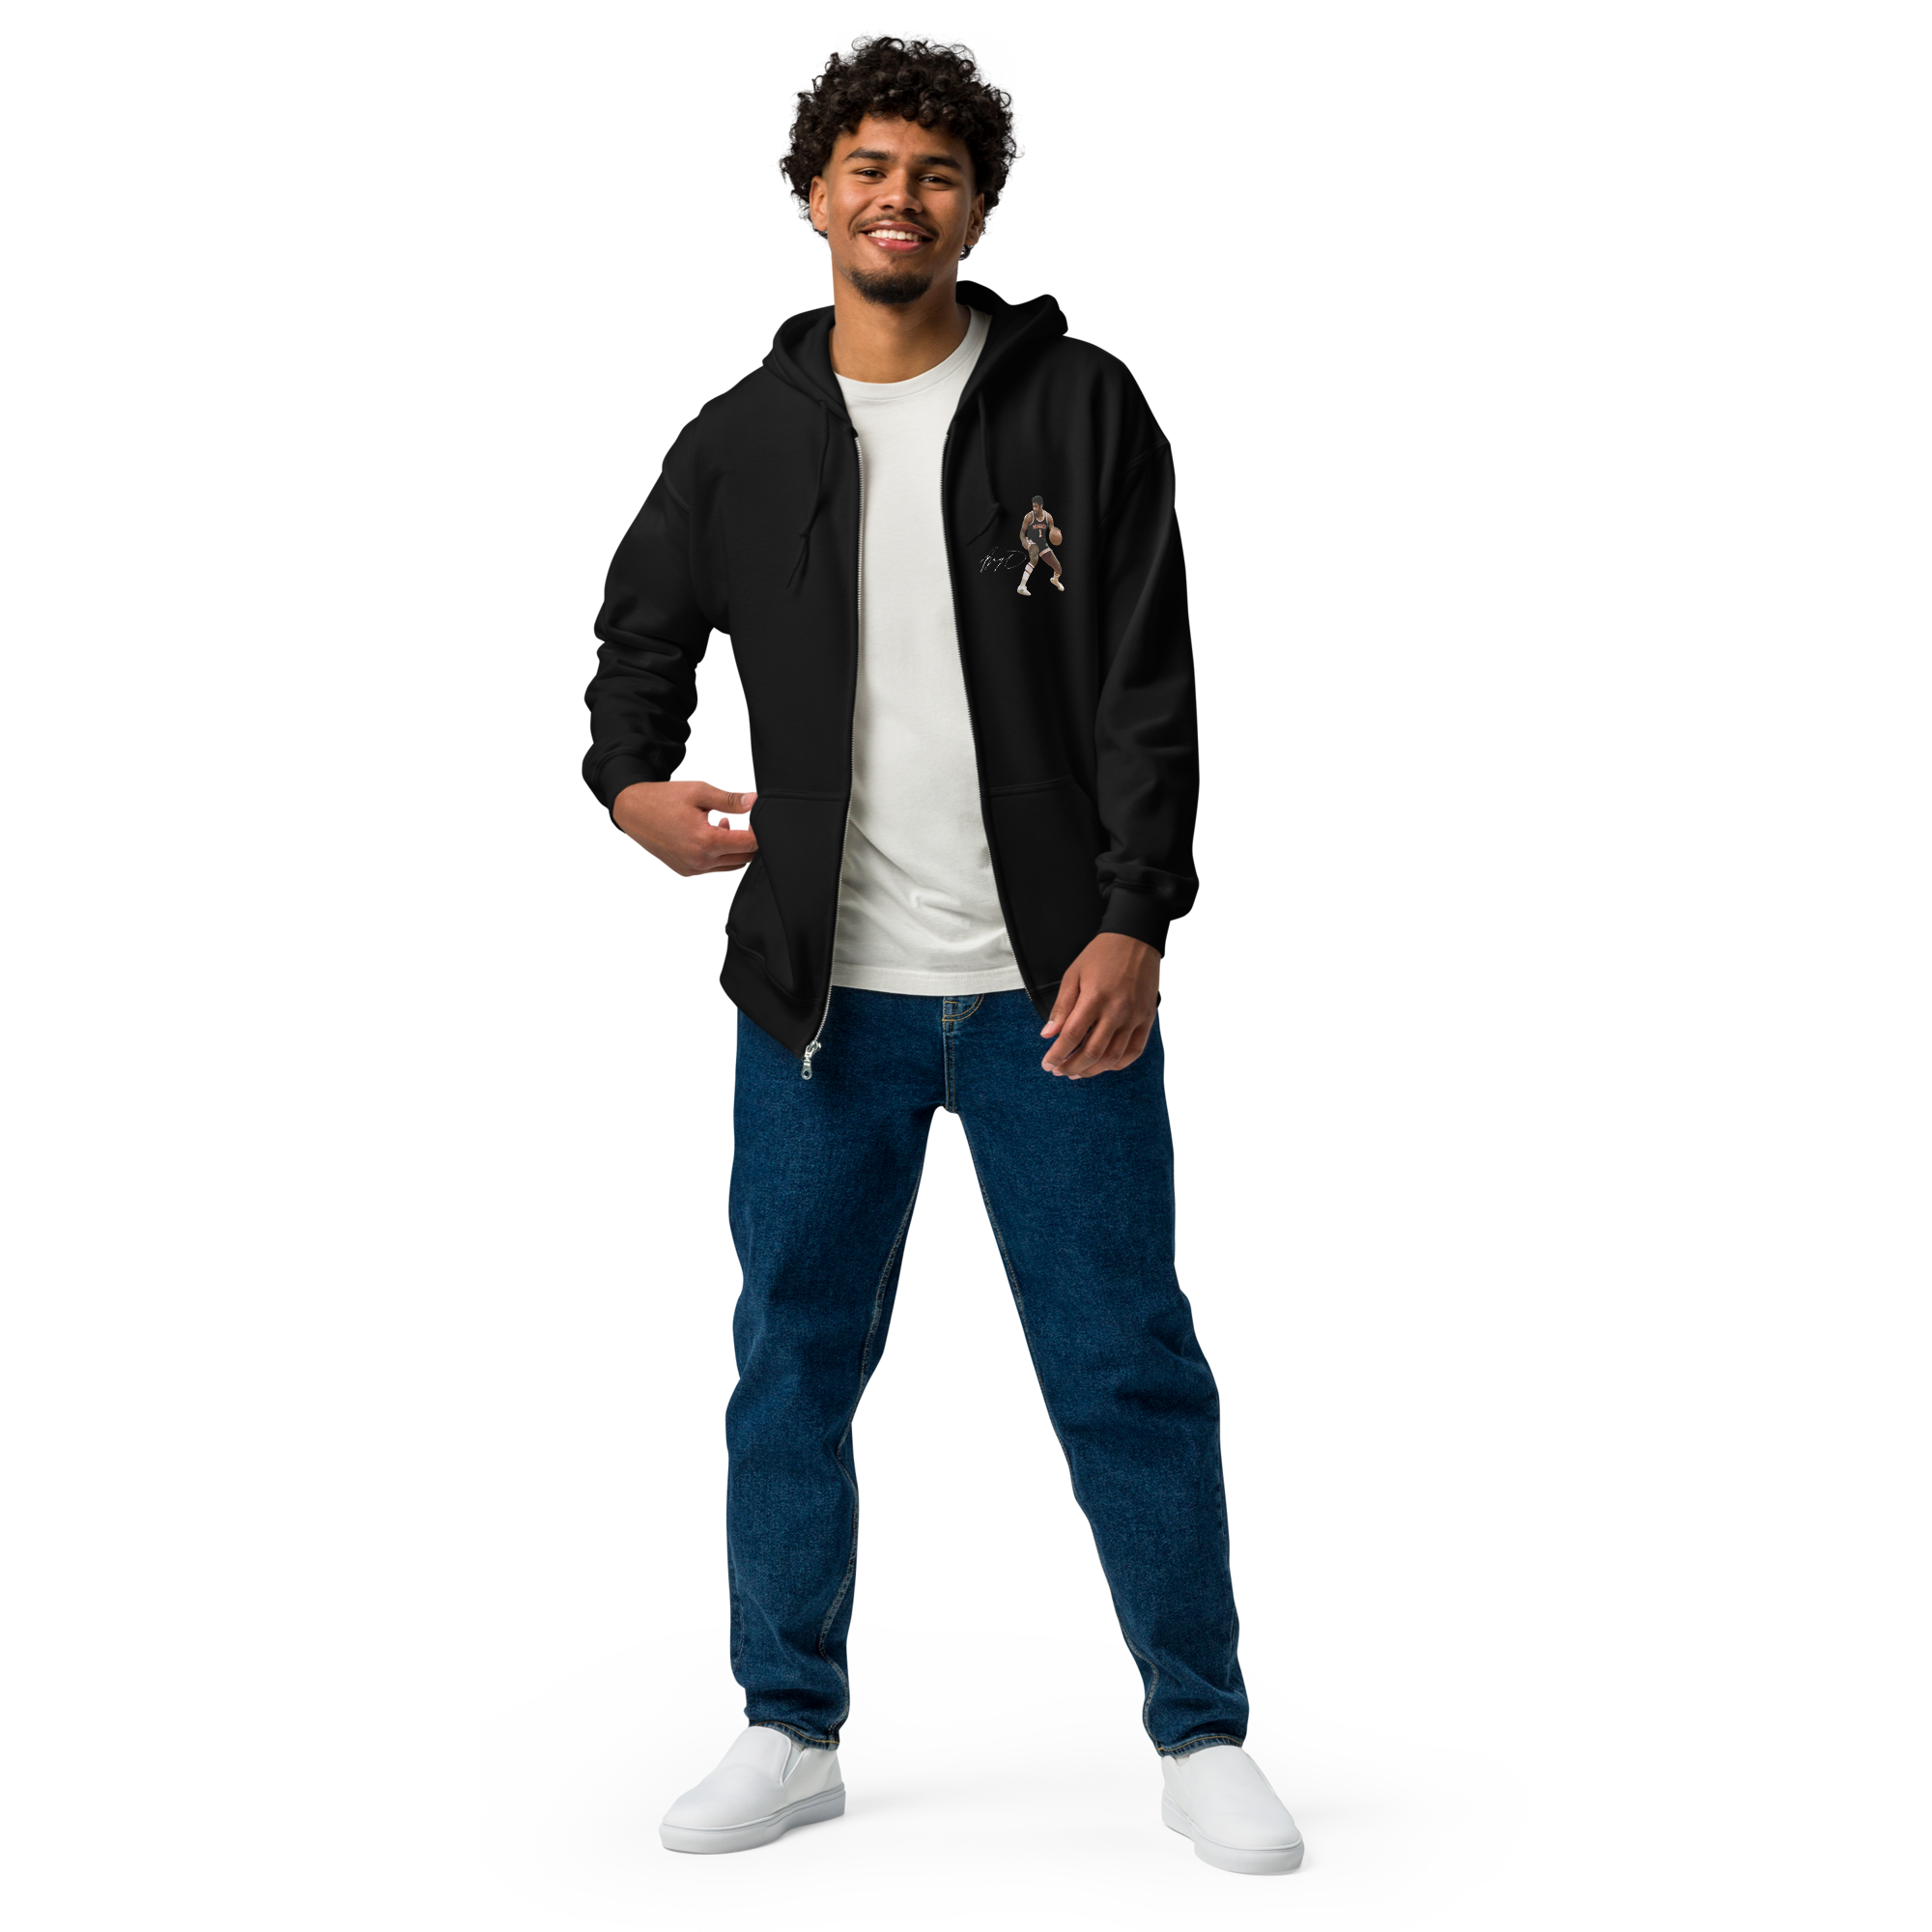 Big O - Unisex heavy blend zip hoodie